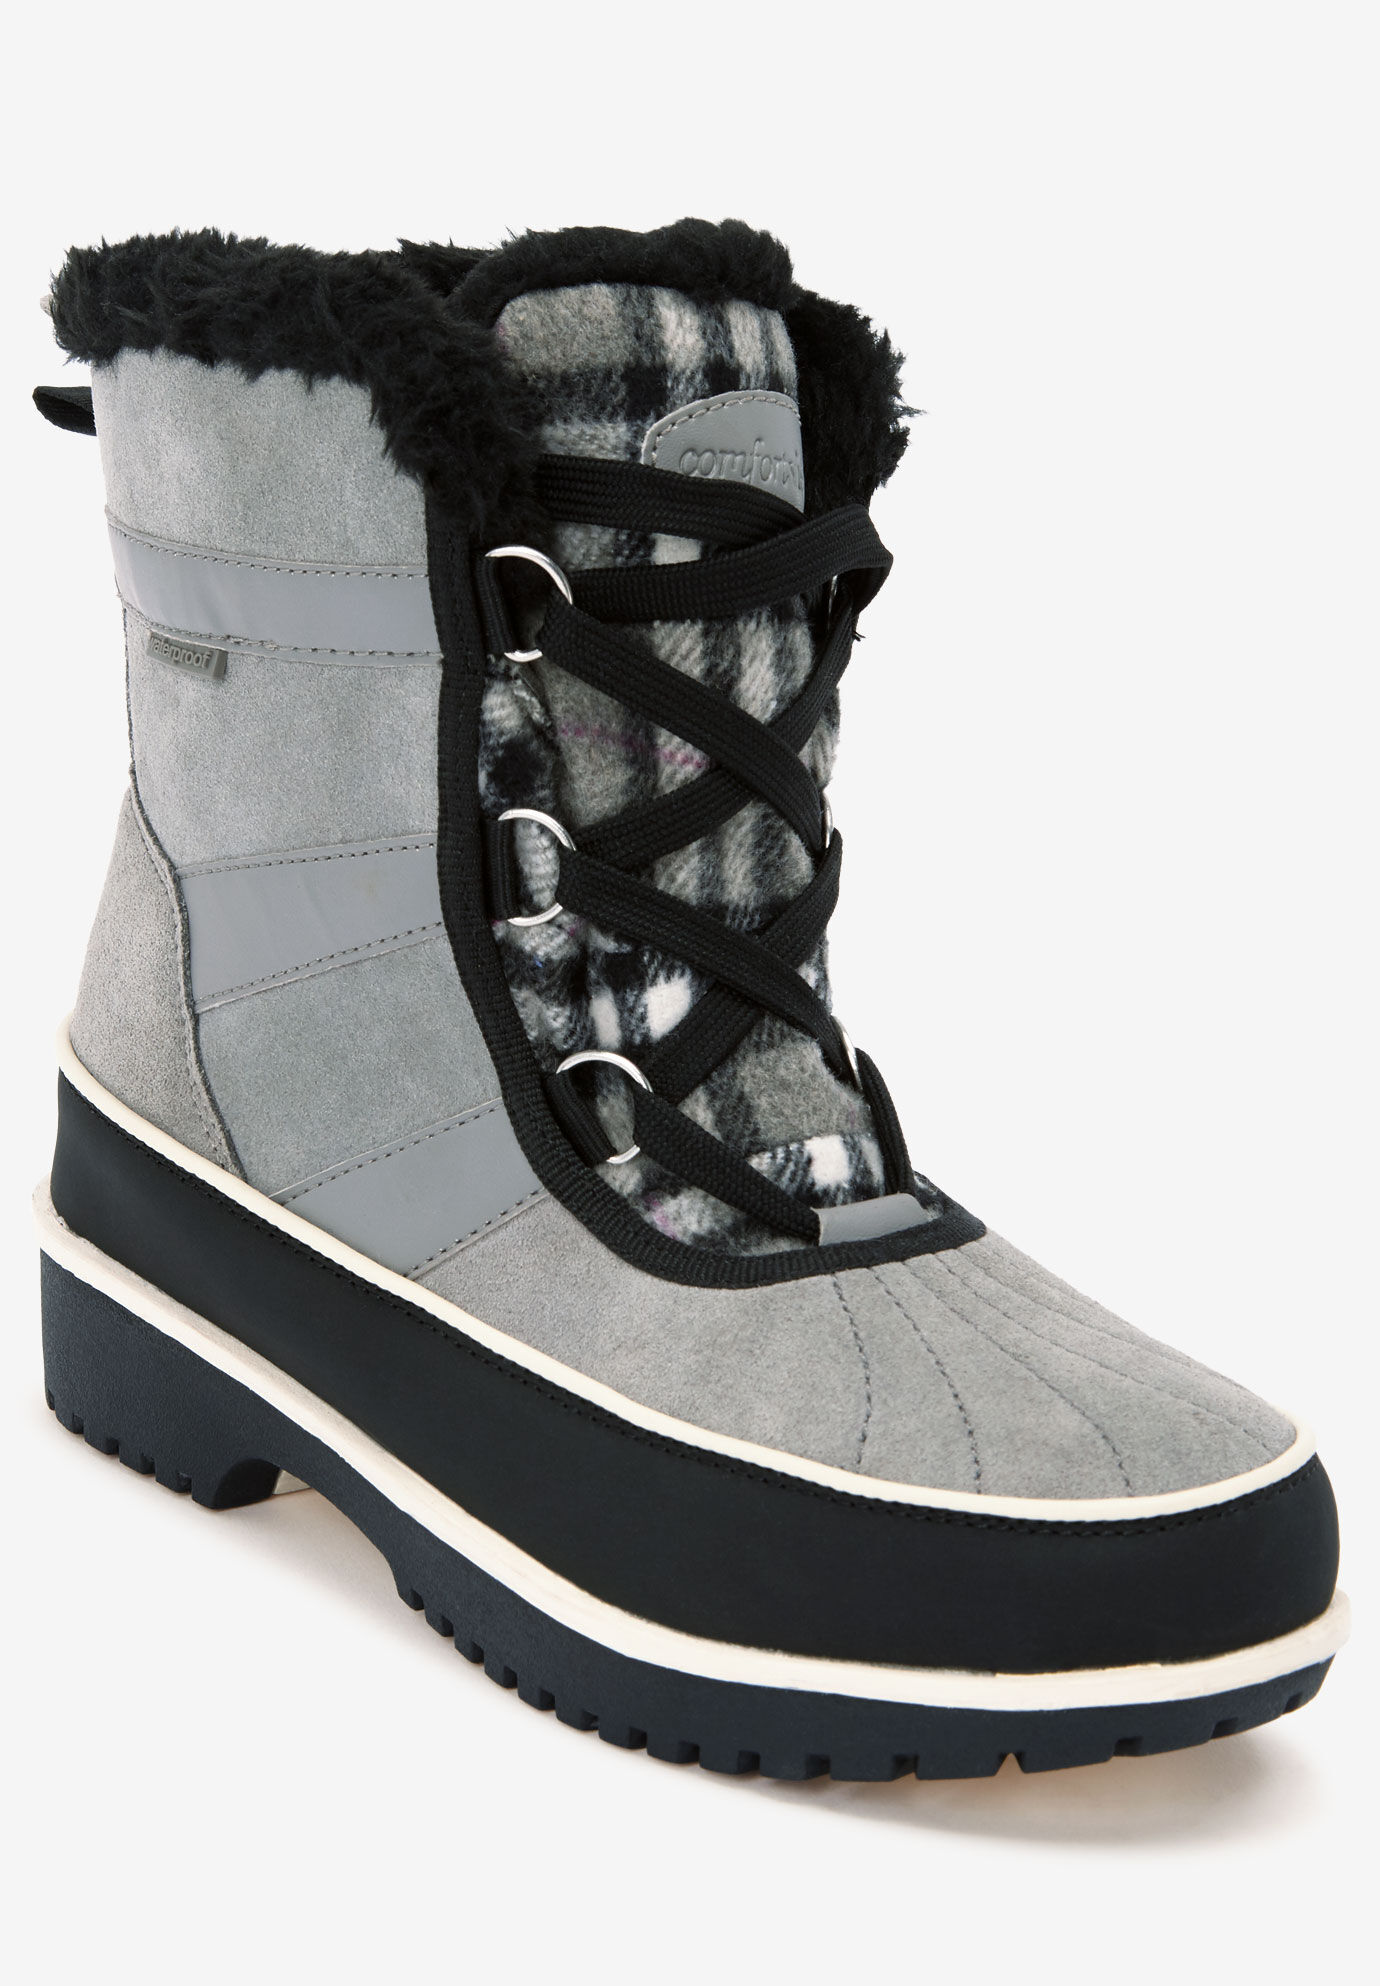 wide calf winter boots womens